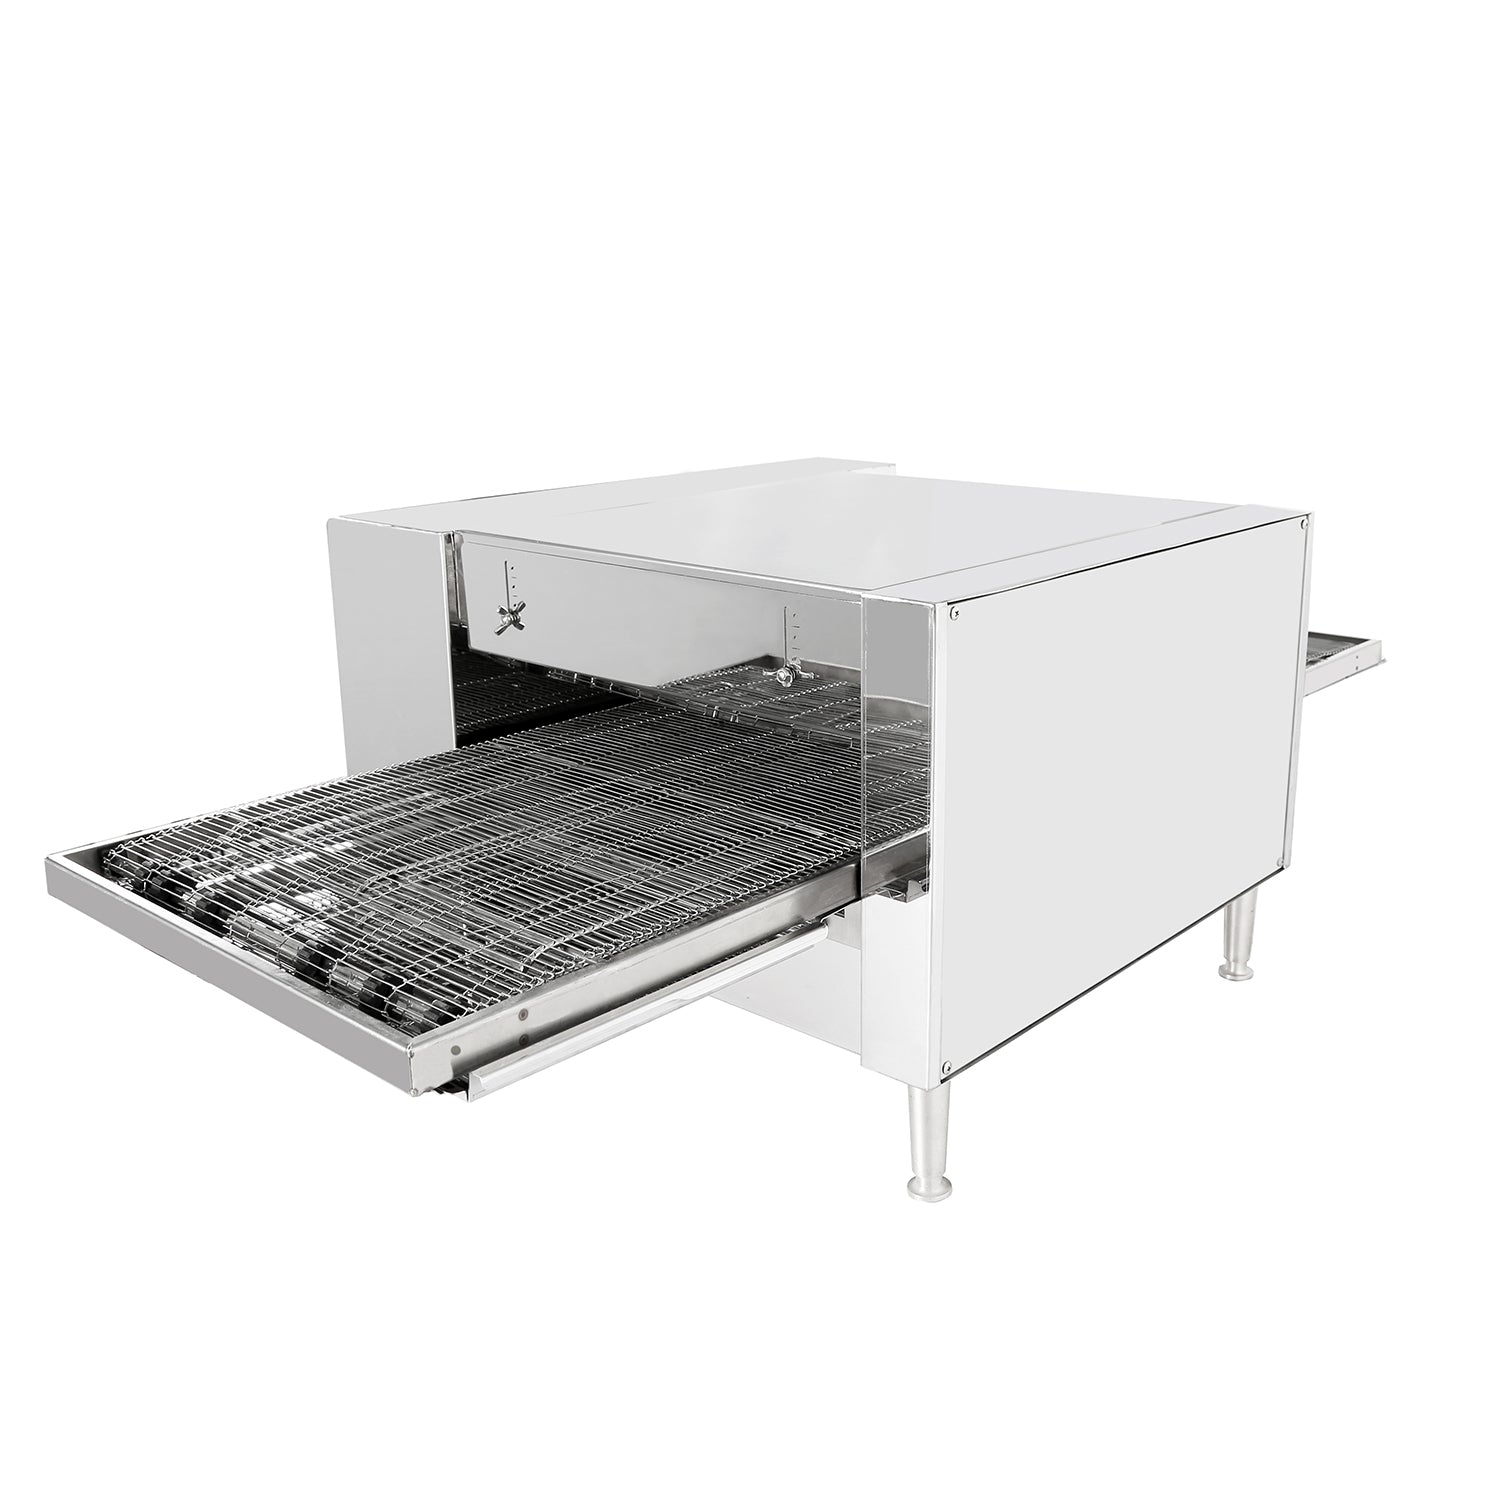 ALDKitchen Pizza Maker Commercial | Electric Conveyor Oven | Digital Display | 110V